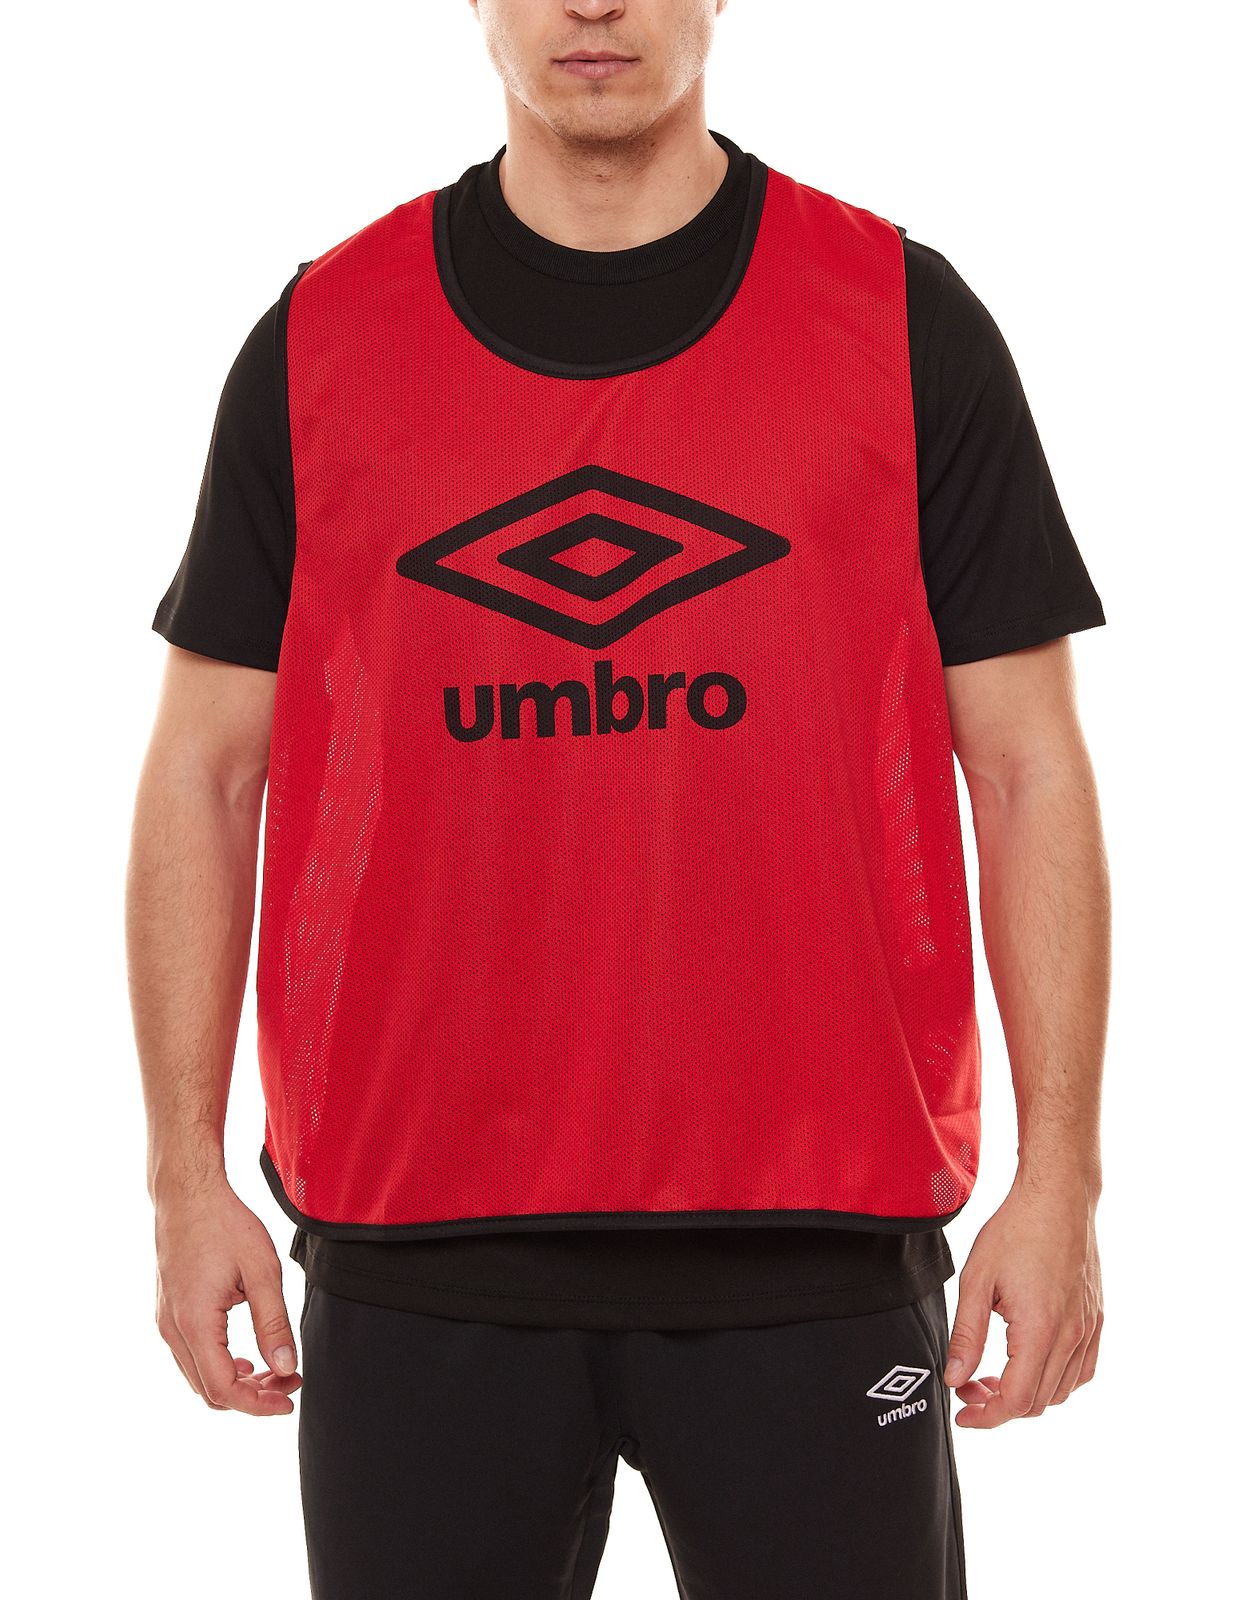 umbro Training Bib Herren Trainings-Leibchen Shirt UMTM0460-B26 Rot von umbro